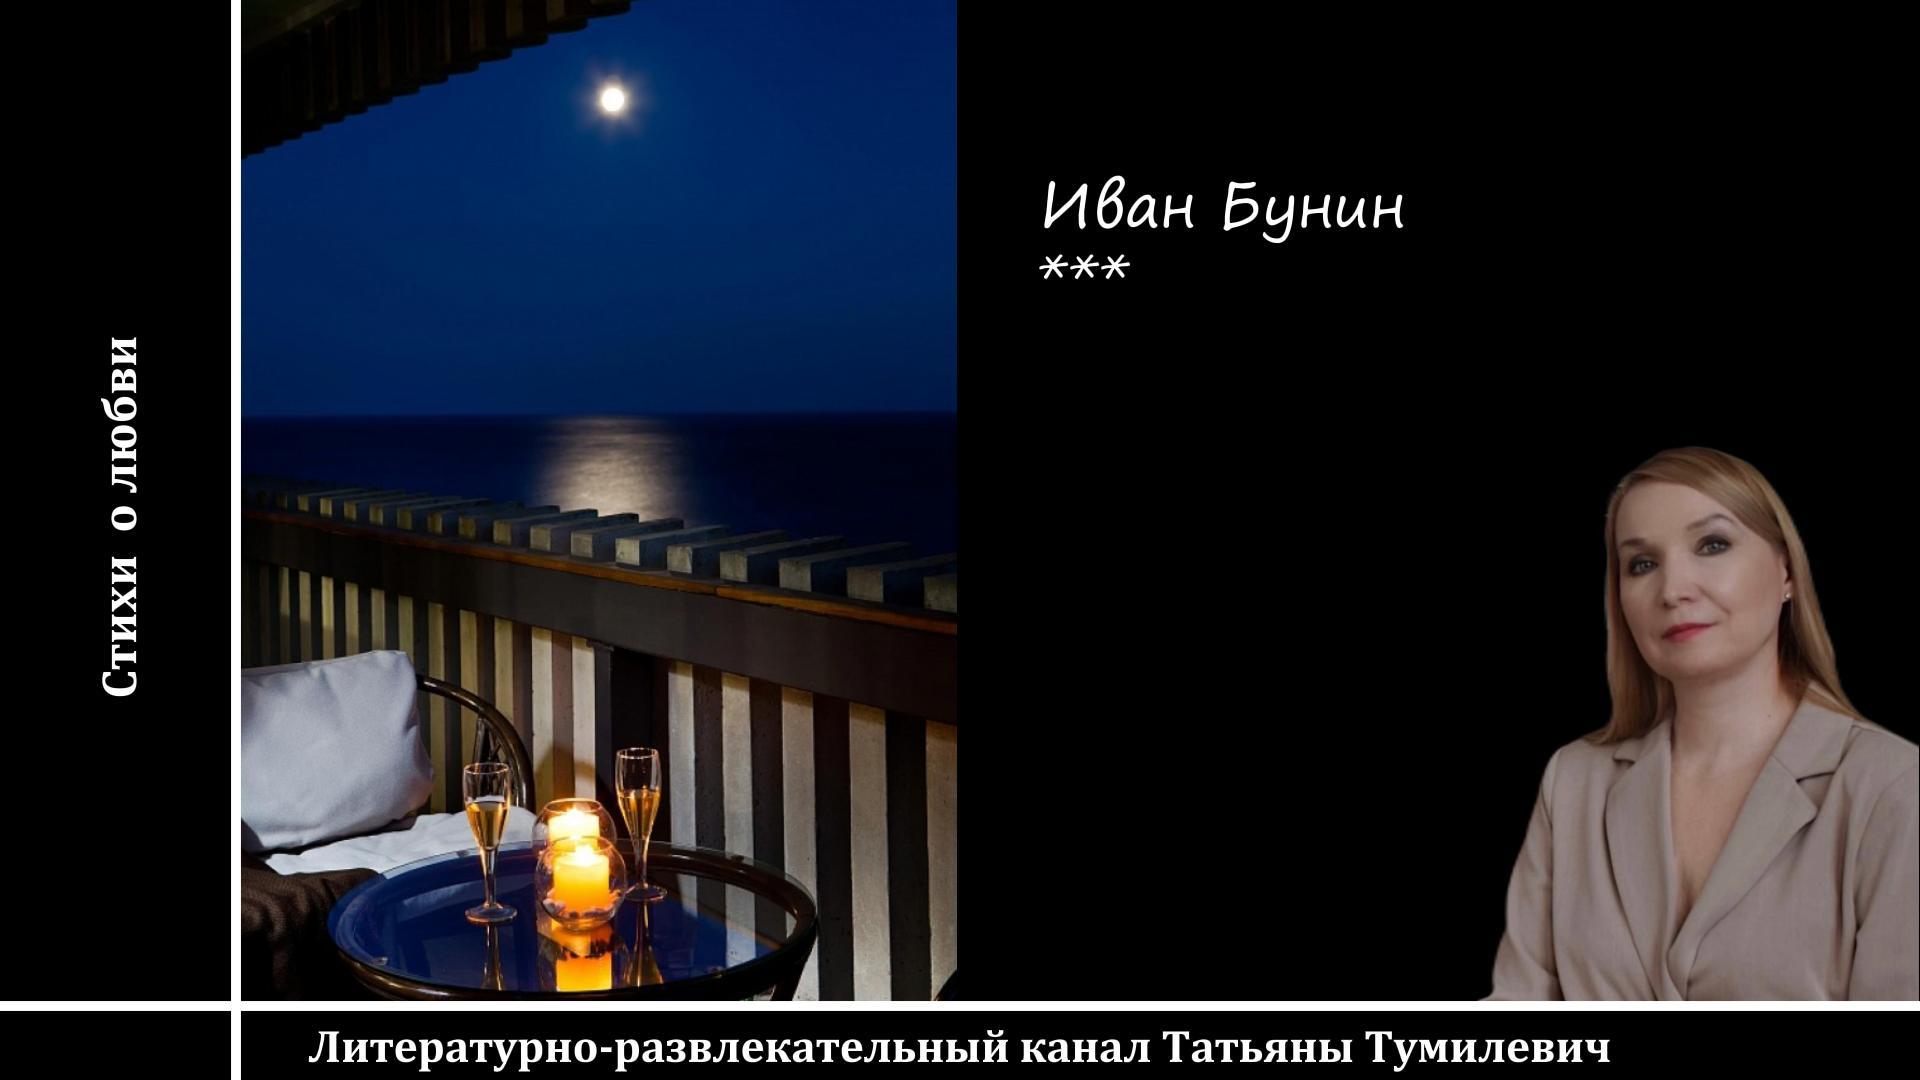 Иван Бунин "В дачном кресле, ночью, на балконе..."